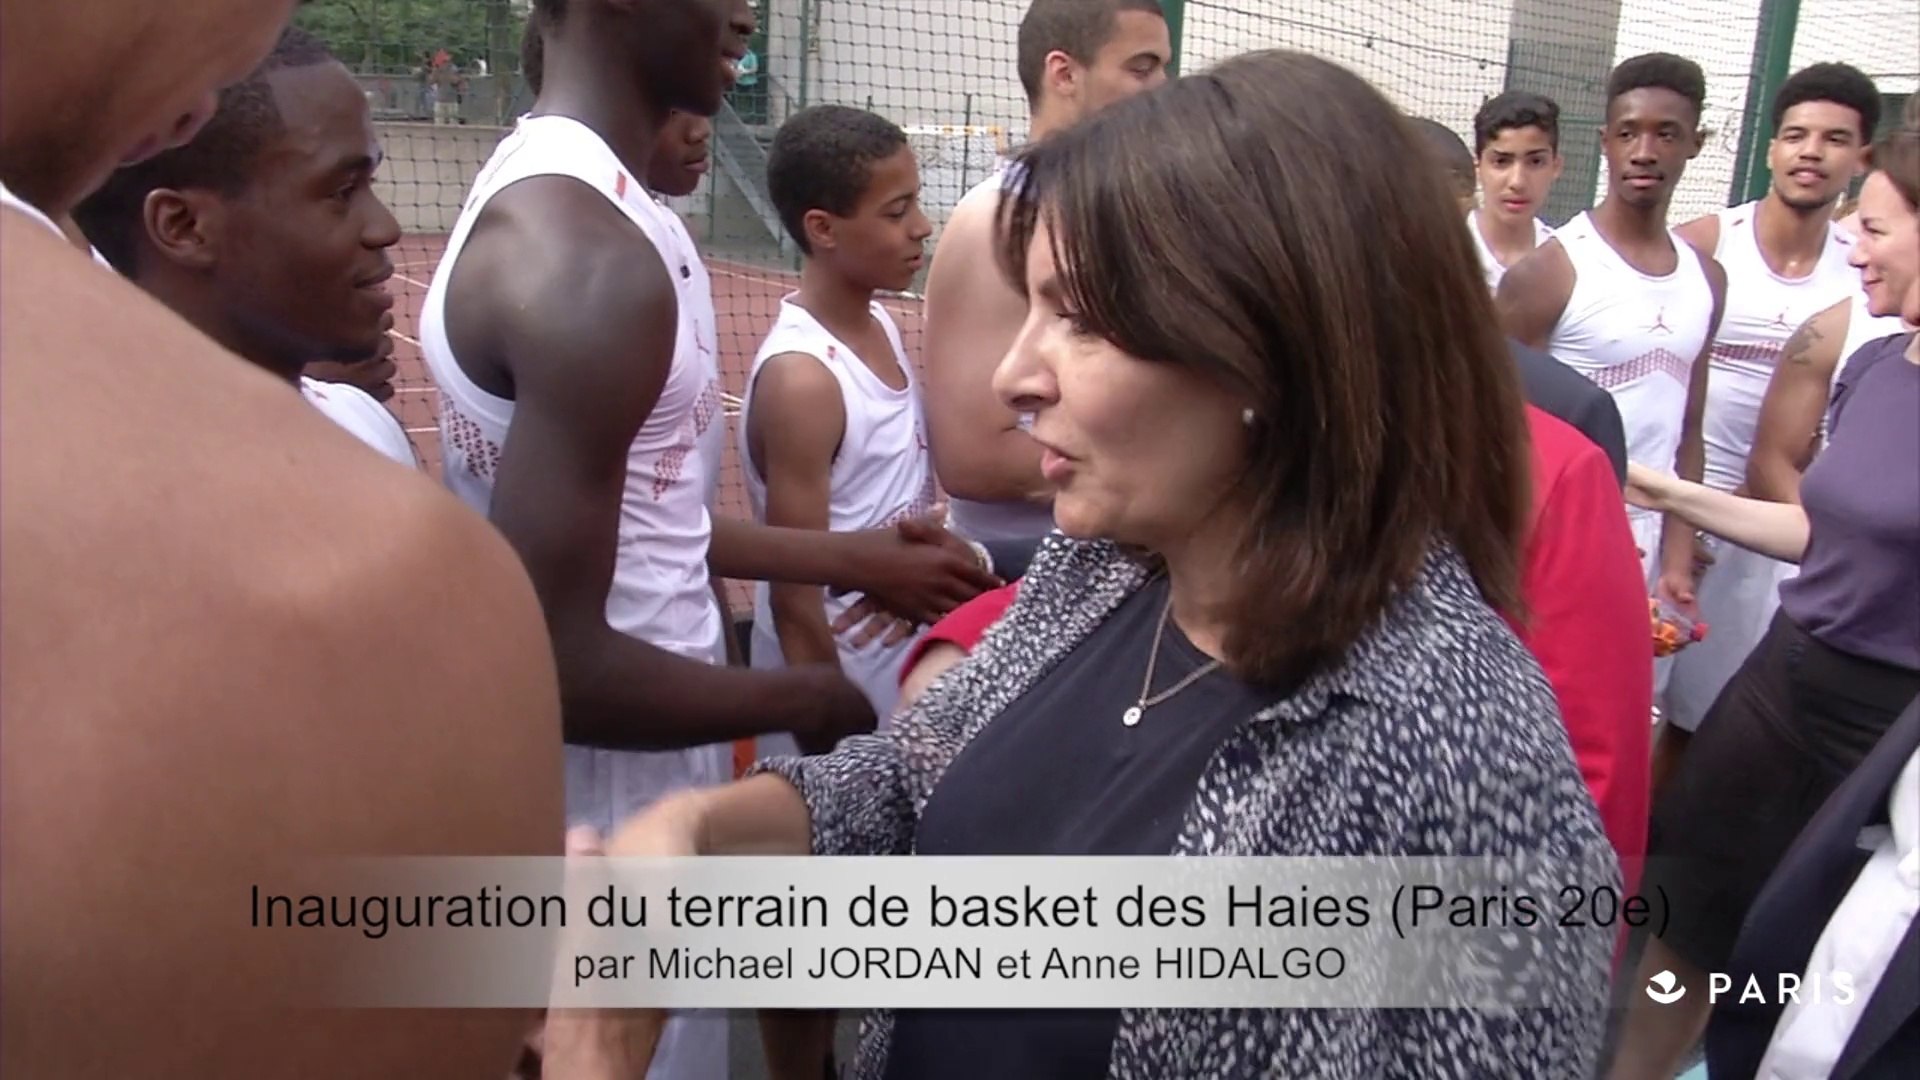 Michael Jordan et Anne Hidalgo inaugurent le terrain de basket des Haies  (Paris 20e) - Vidéo Dailymotion